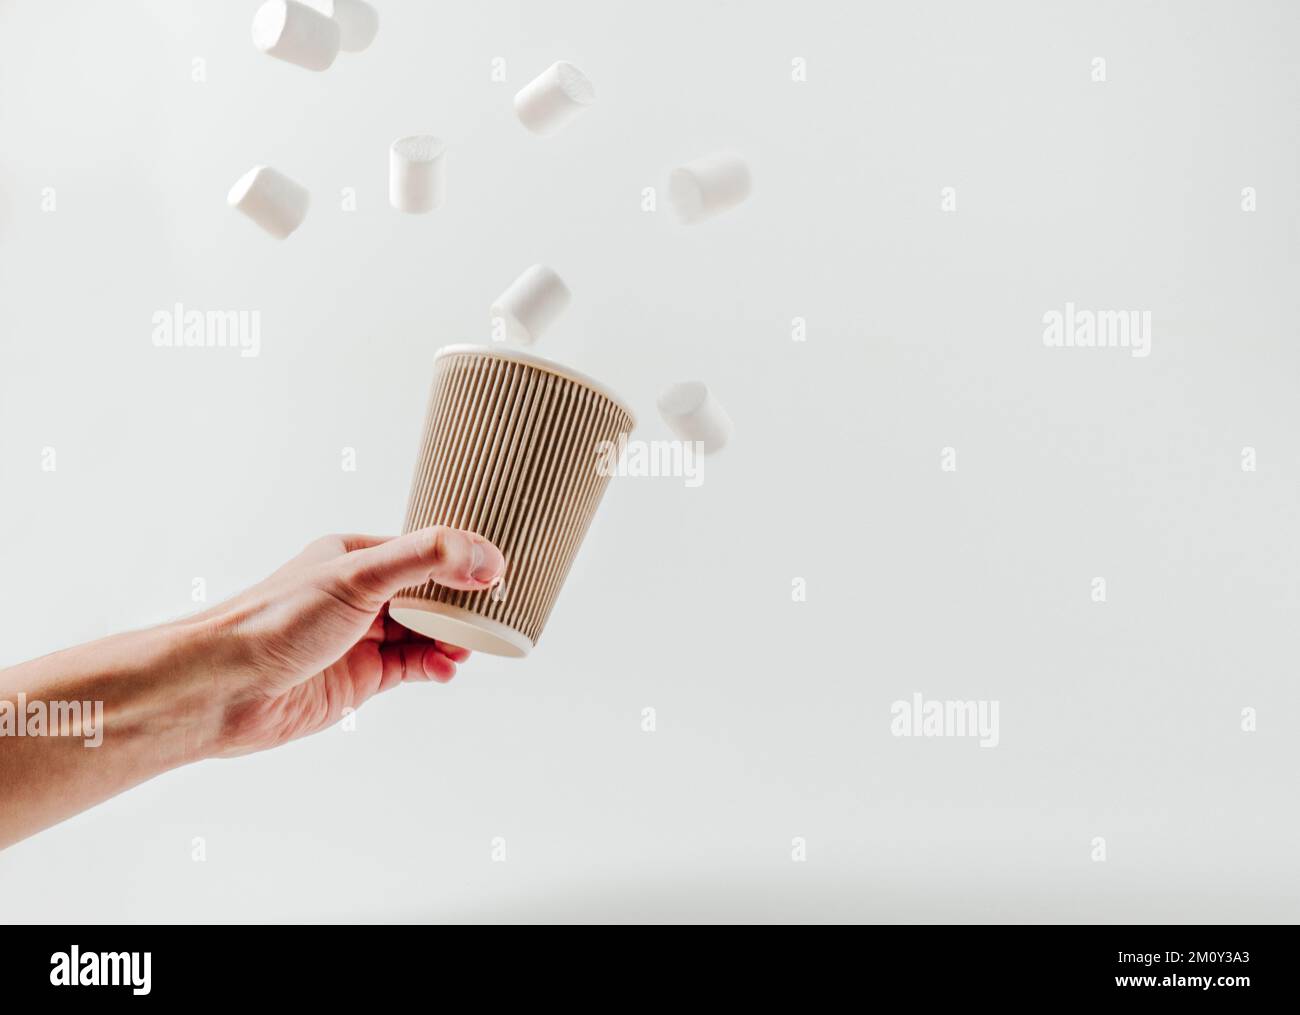 Pappbecher mit heißem Getränk, fliegende Marshmallows in männlicher Hand. Weißer Hintergrund. Kaffee, Latte, Cappuccino, Kakao. Einweg-Pappbecher. Recycling und e Stockfoto